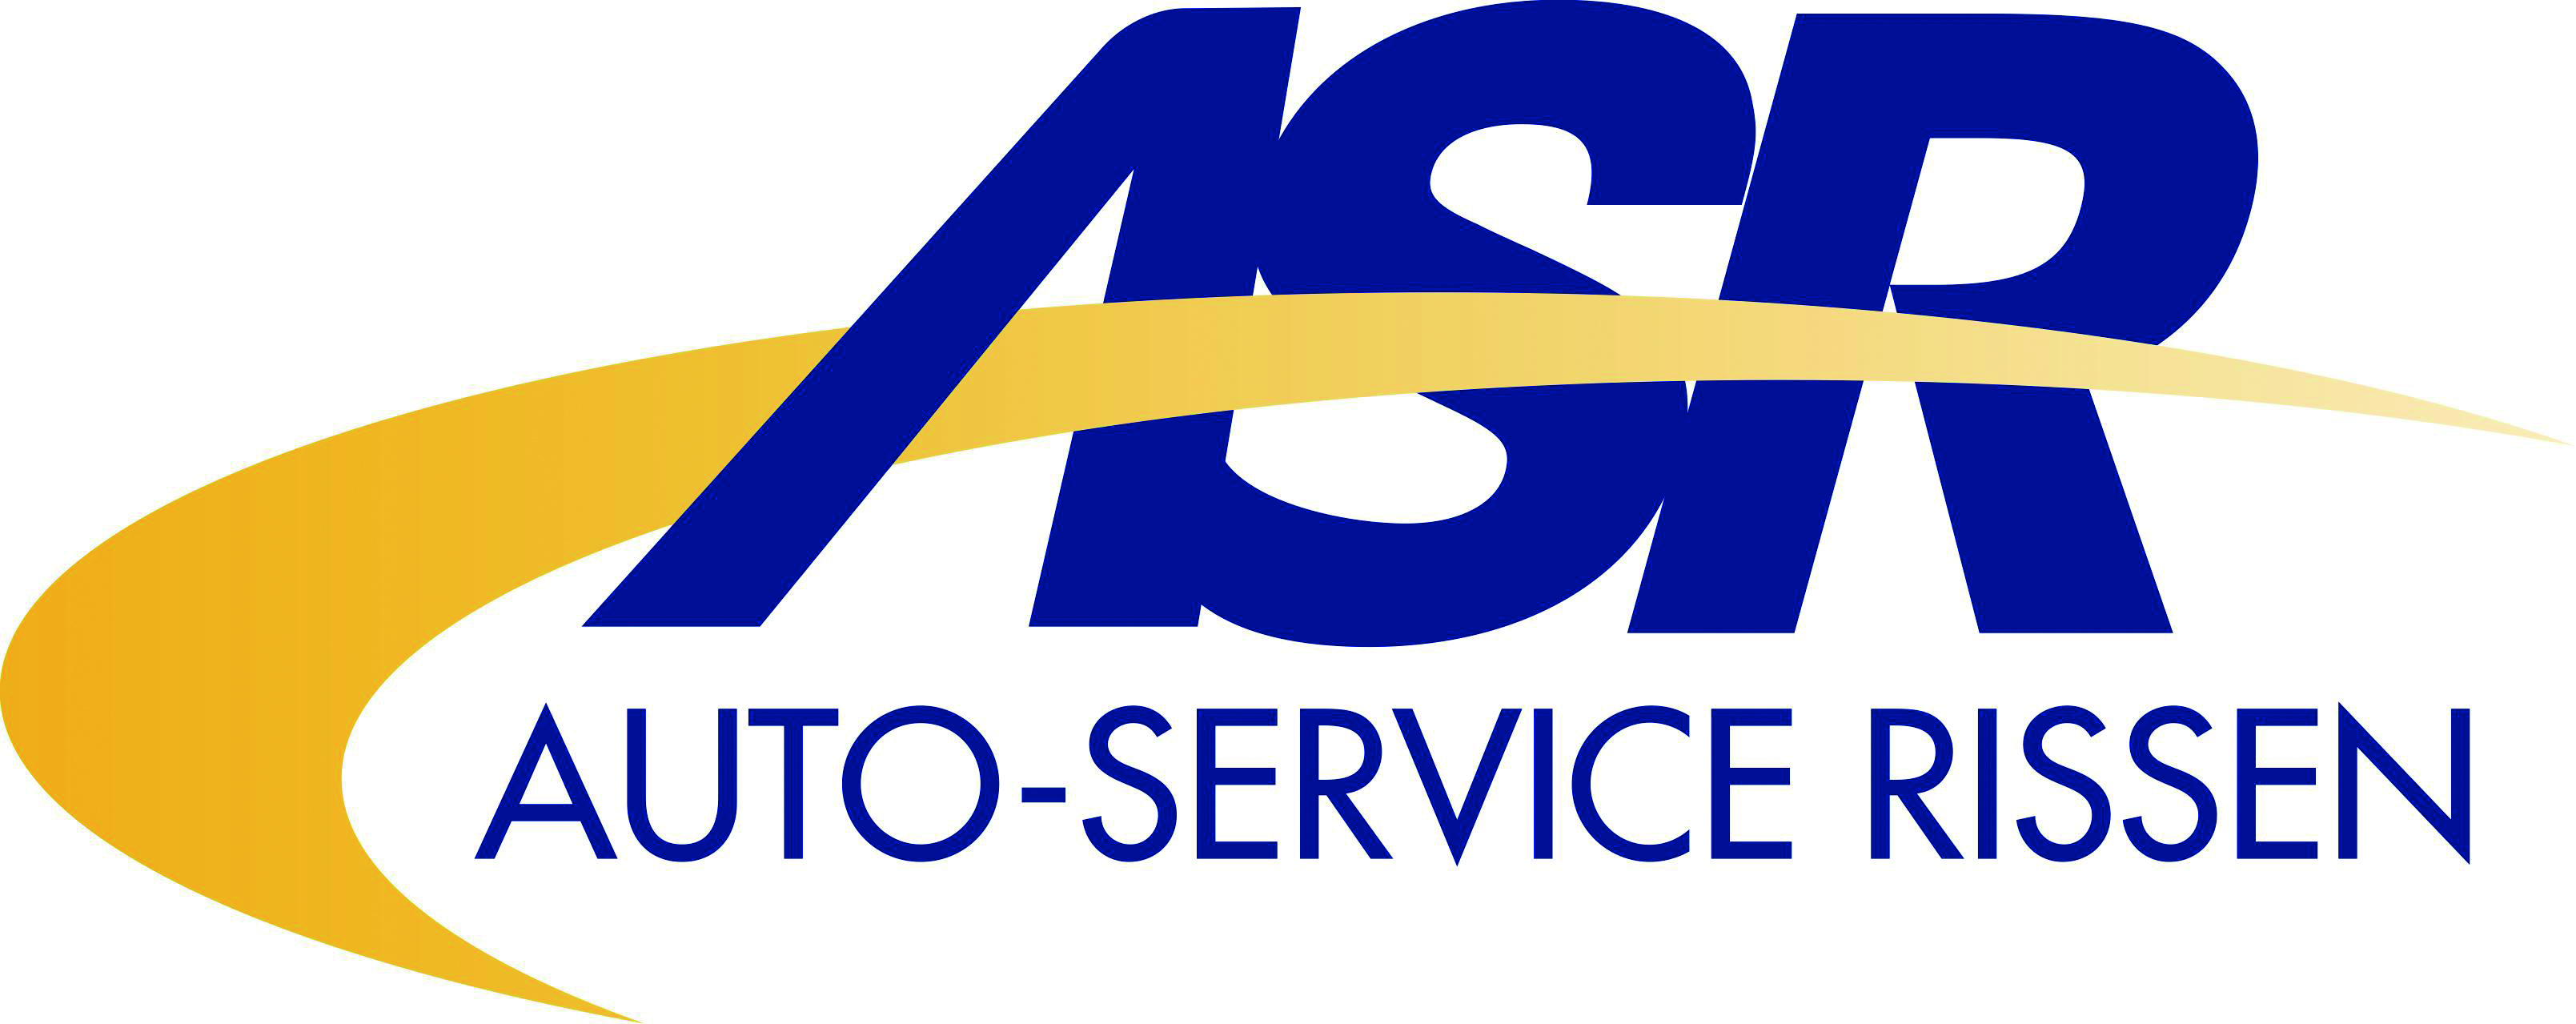 ASR Auto-Service Rissen Inh. Stefan von Roth logo